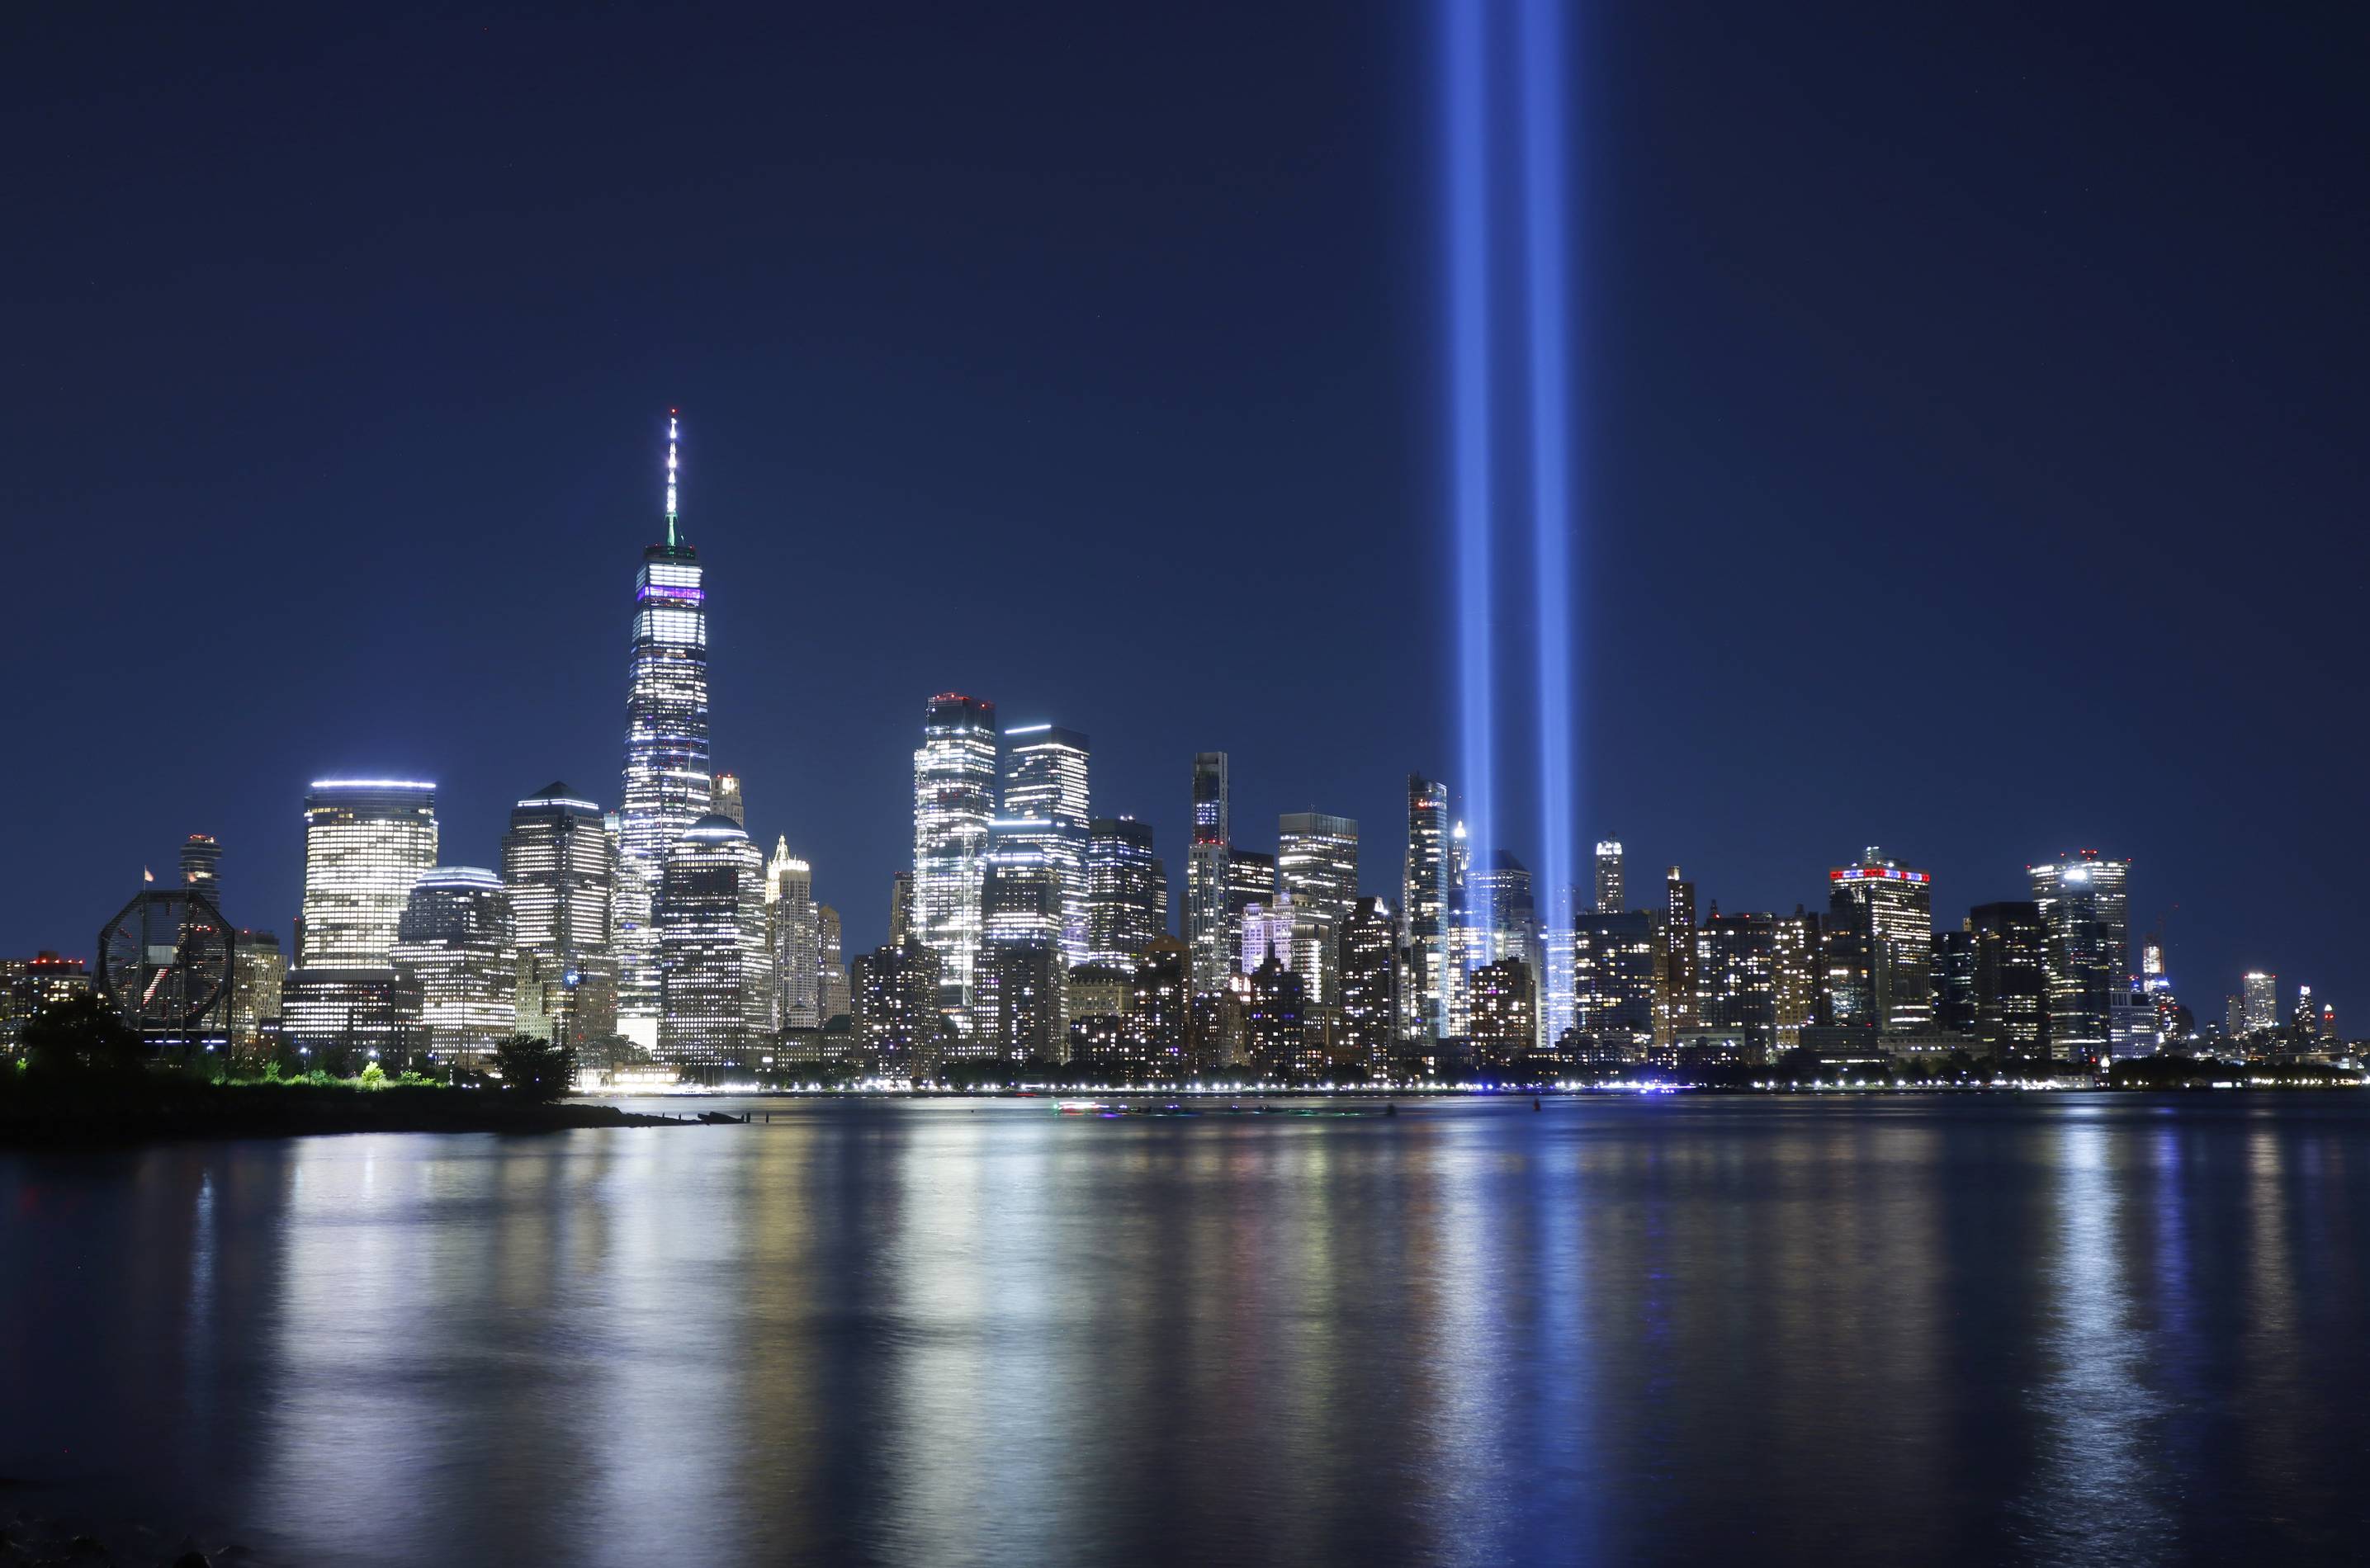 Sept 11 memorial tribute of lights